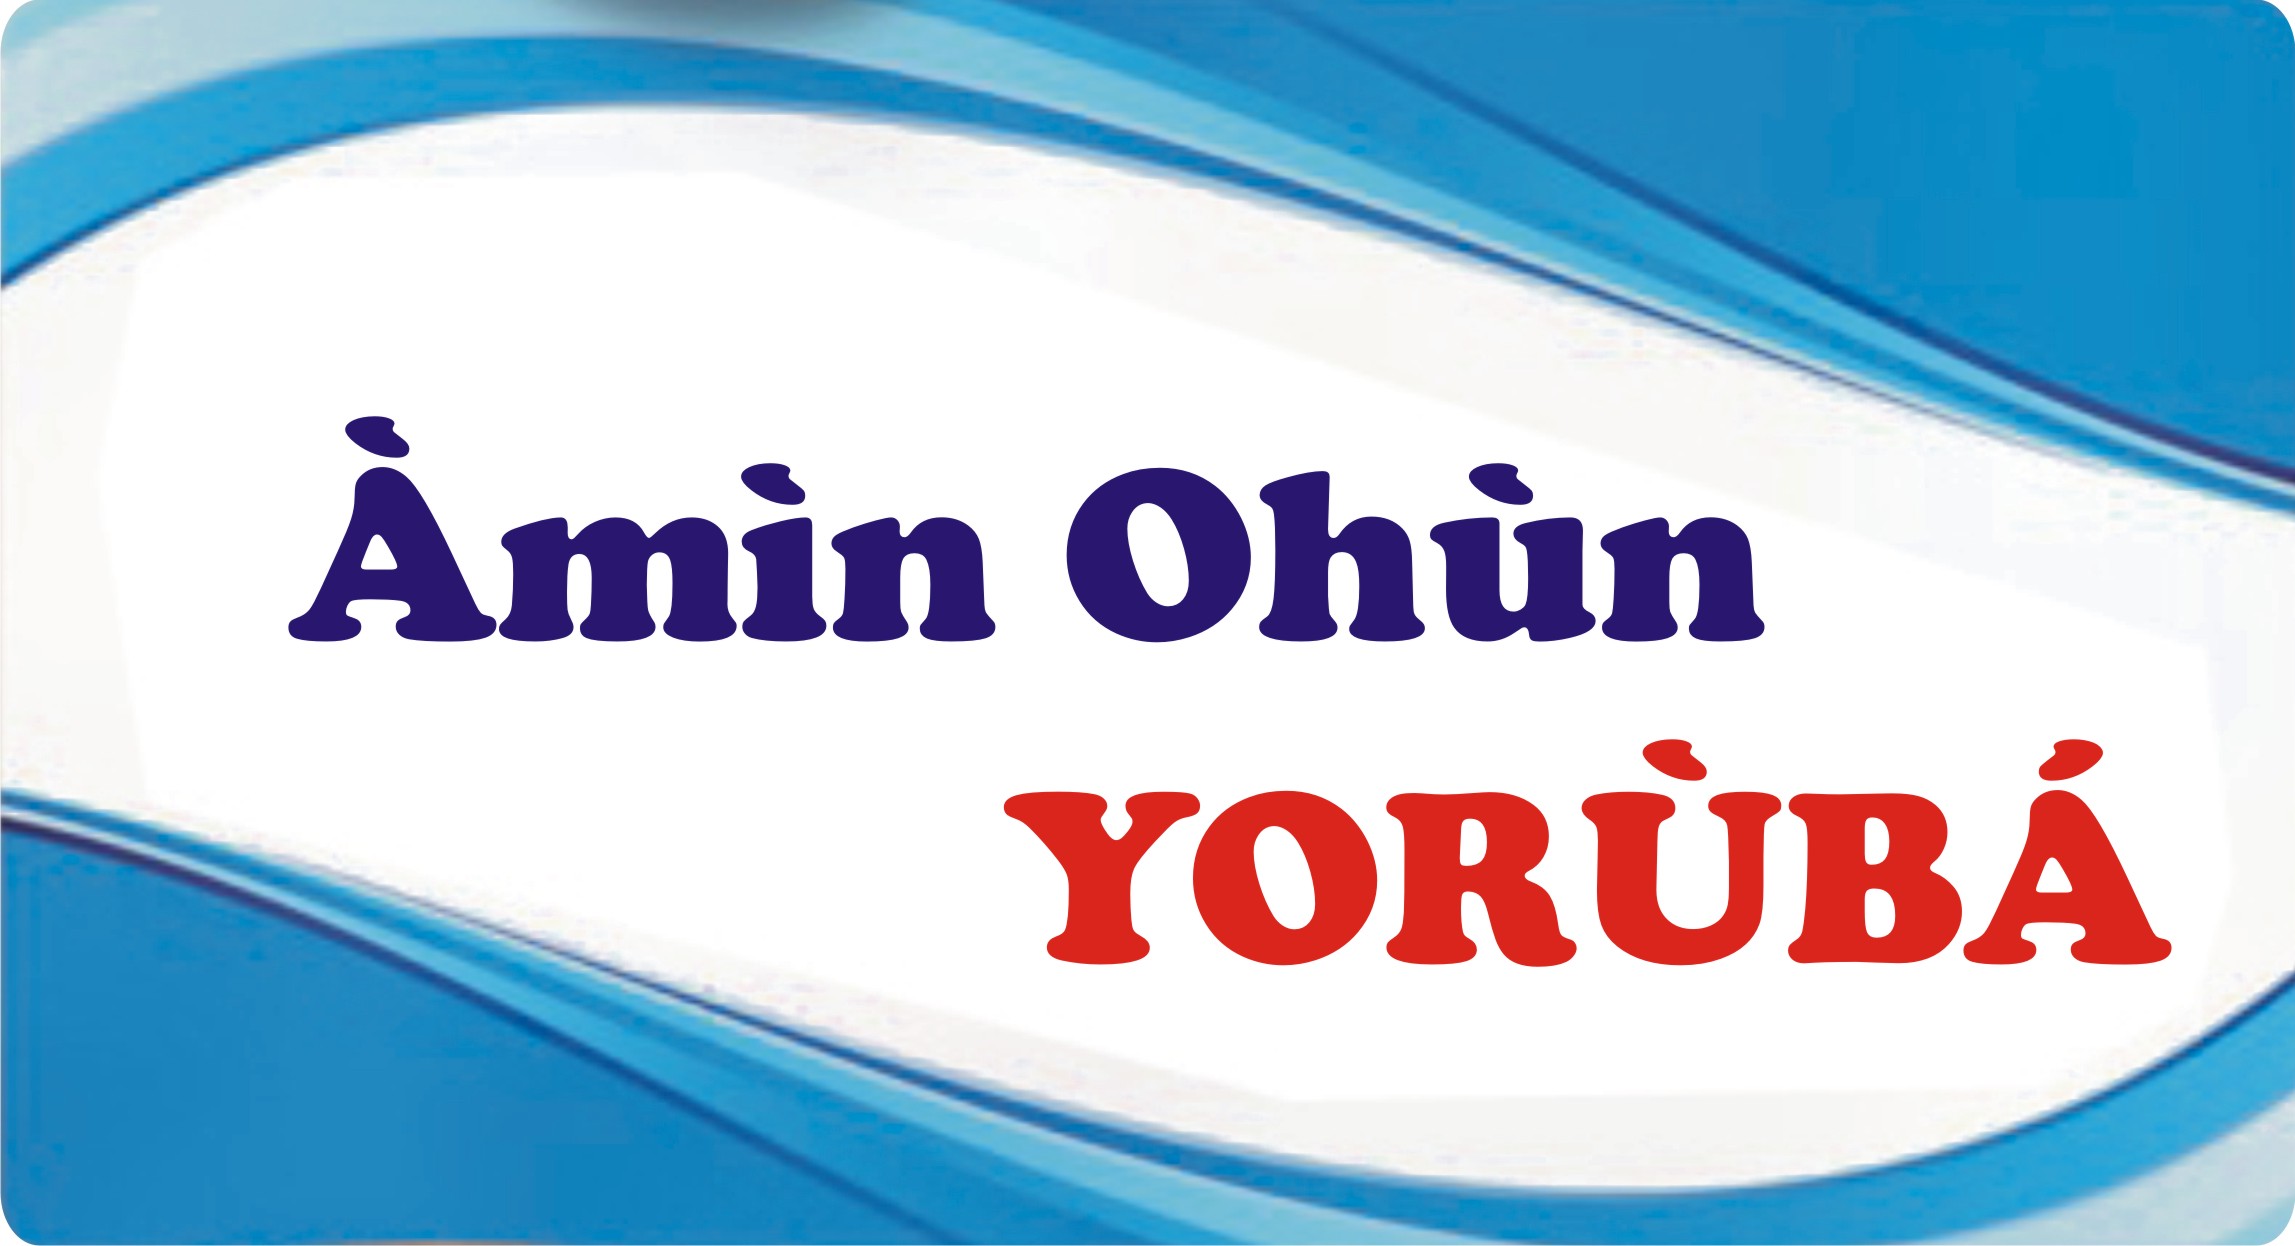 putting Amin Ohun on Yoruba words